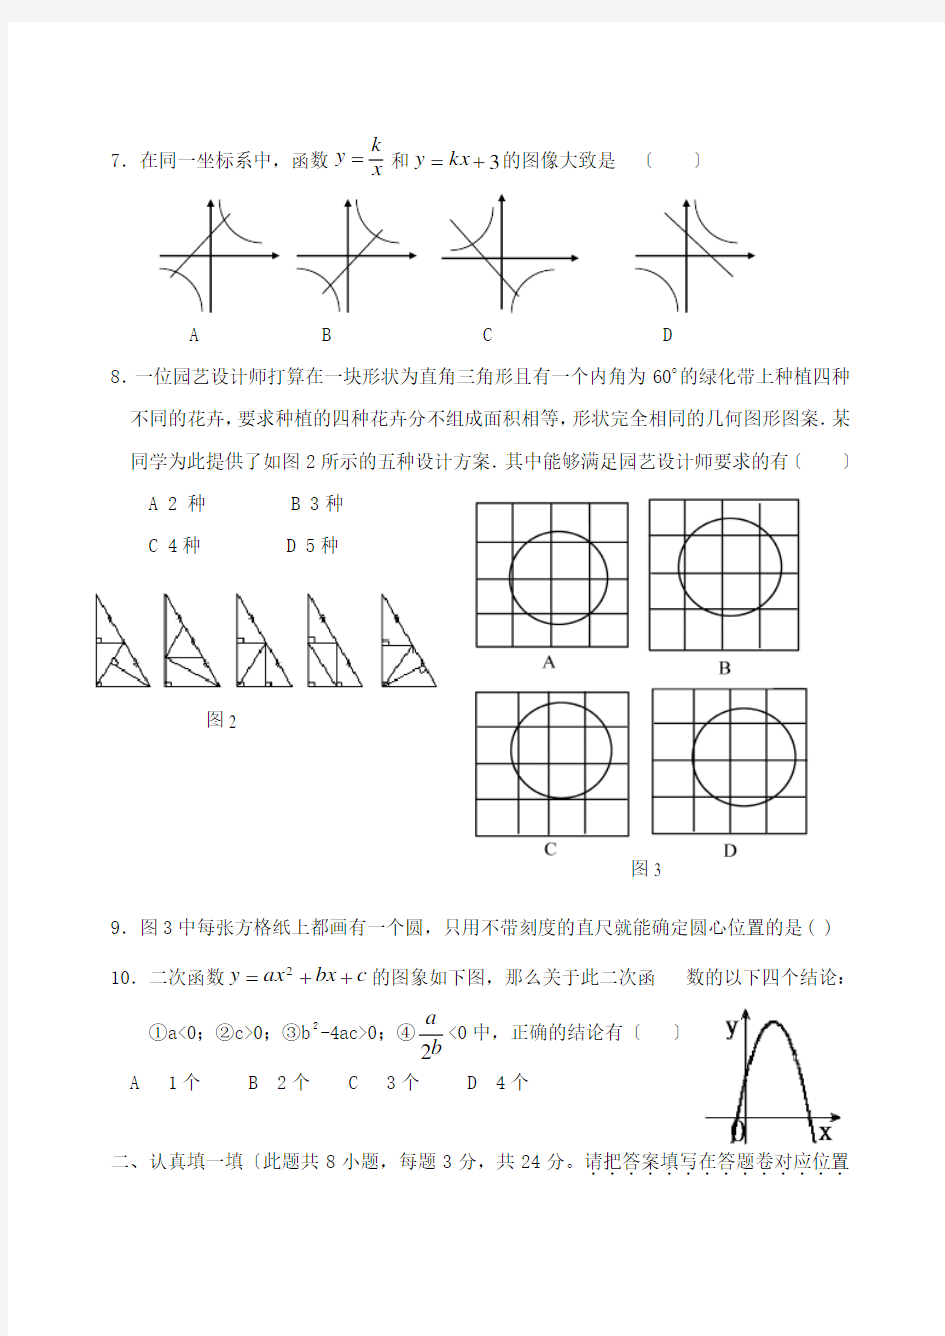 2020年深圳实验学校初三年级两部联考初中数学